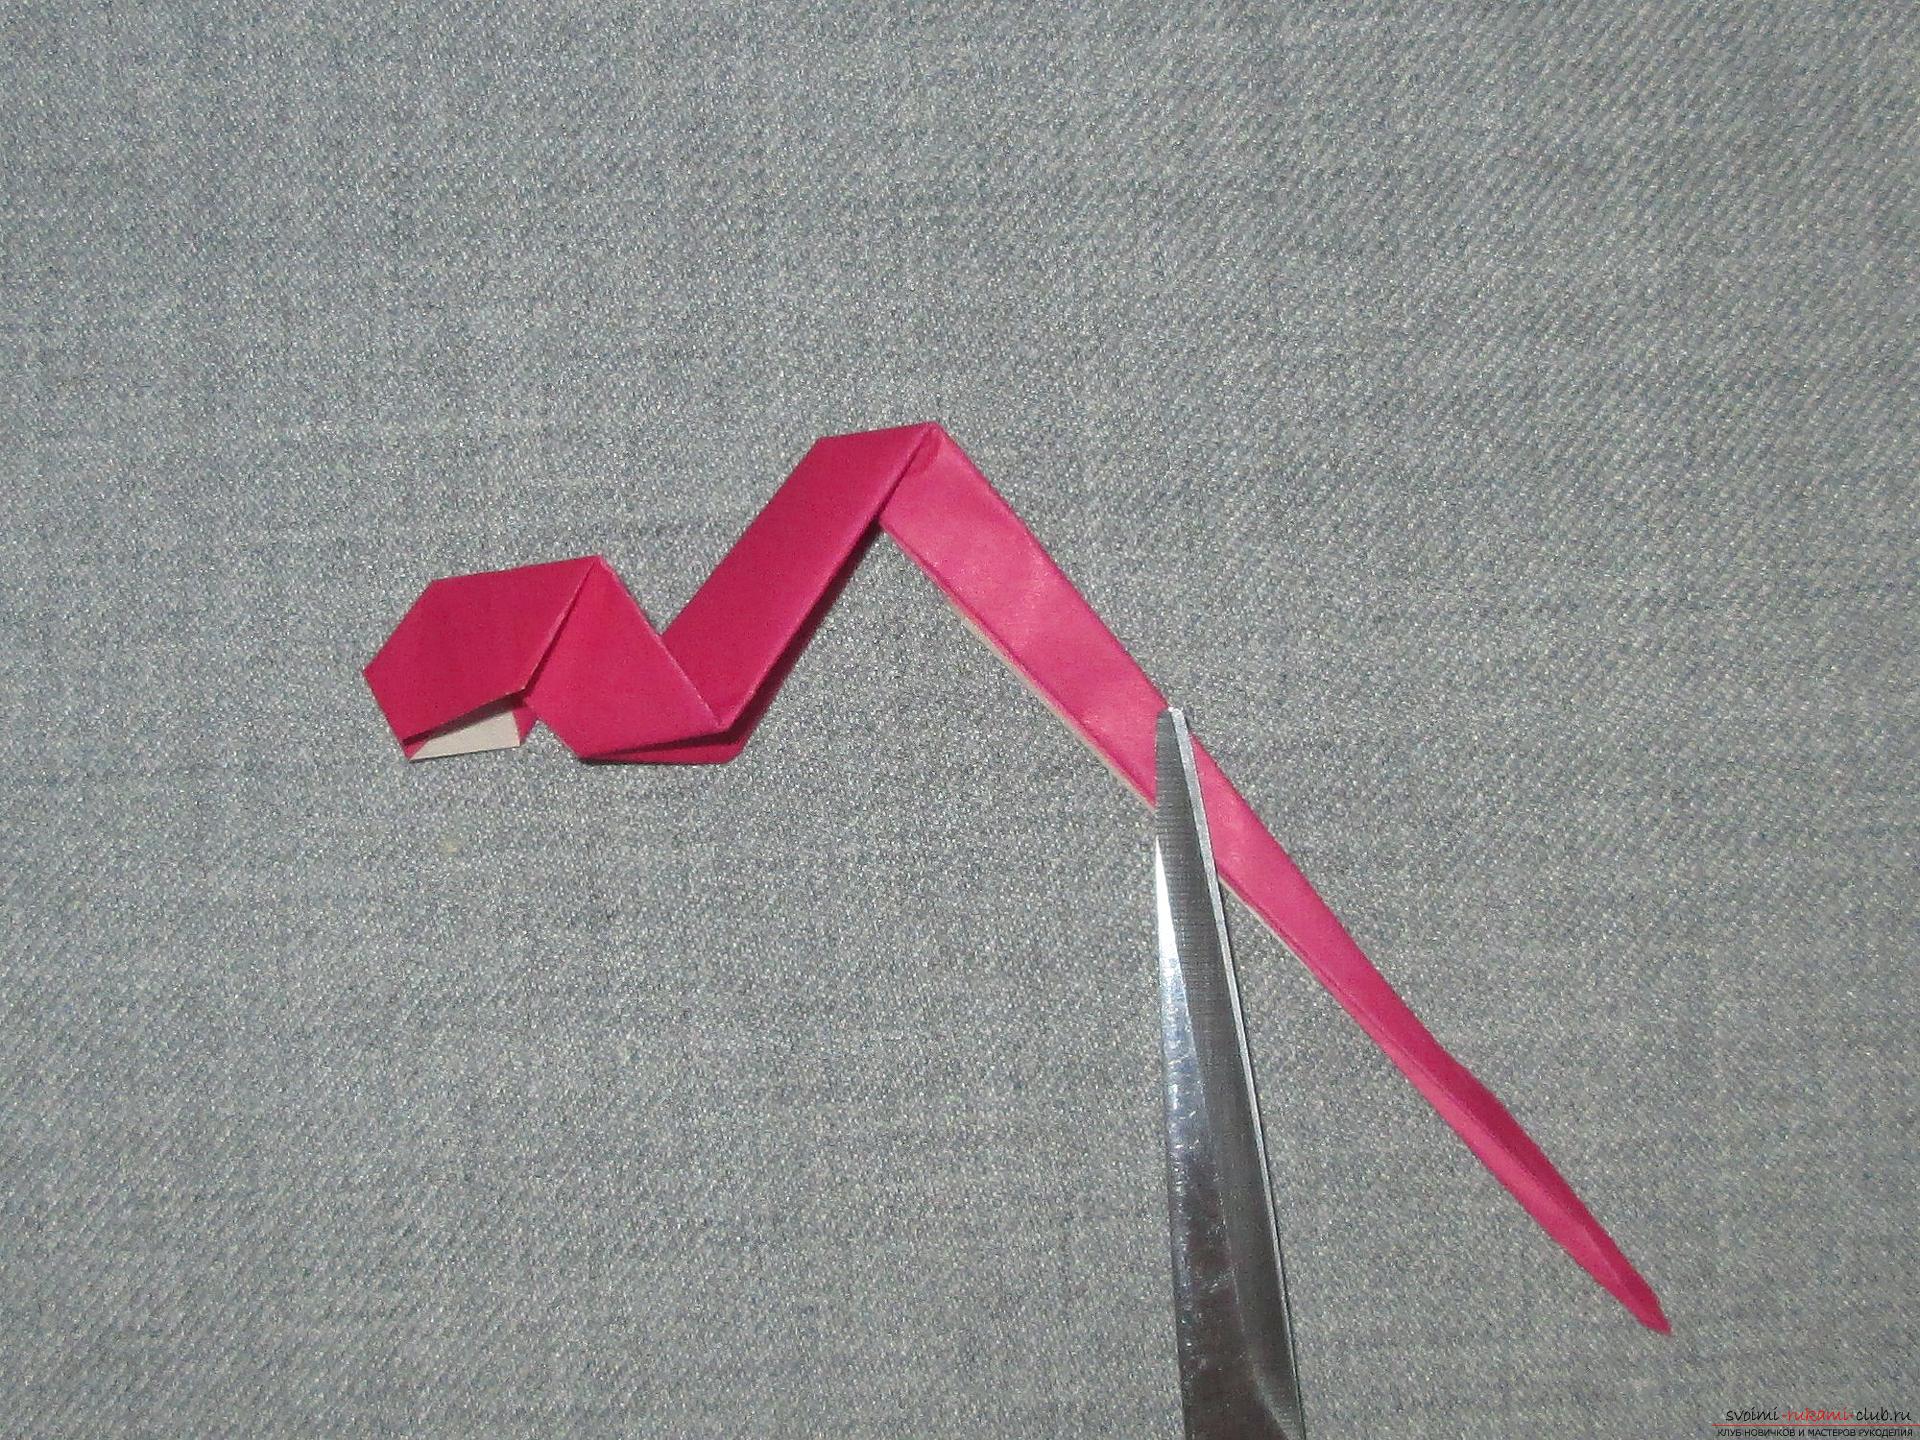 هذا اوريغامي فئة رئيسية مفصلة للأطفال 8 سنوات سوف يعلم كيفية جعل ثعبان اوريغامي مصنوعة من الورق .. صورة # 12